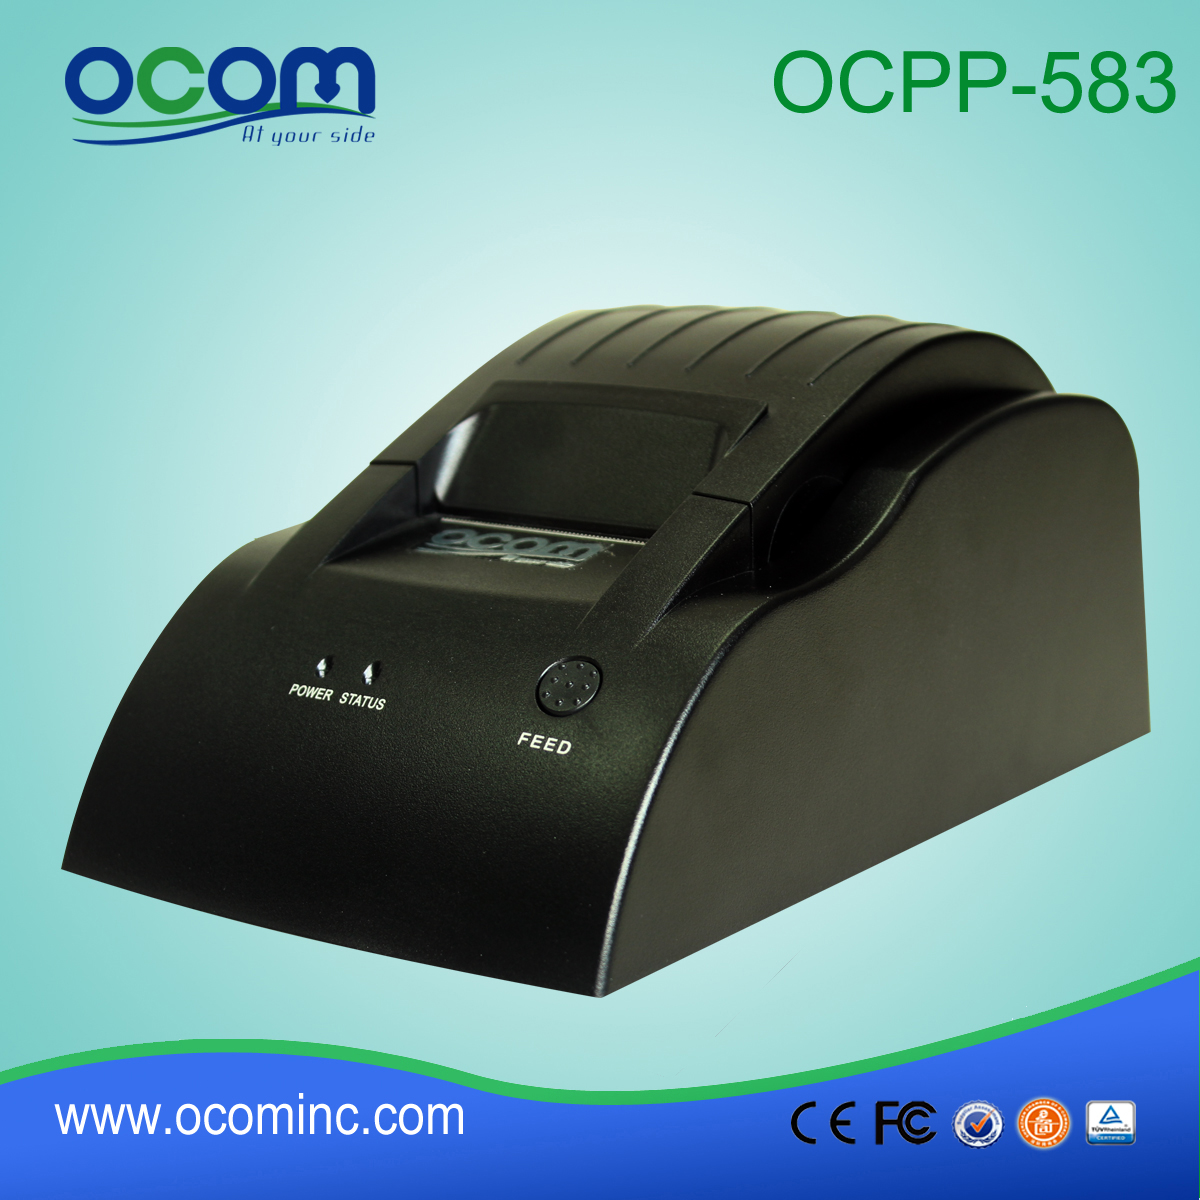 OCPP-583: 2015 hohe Qualität billige Thermodrucker Modul